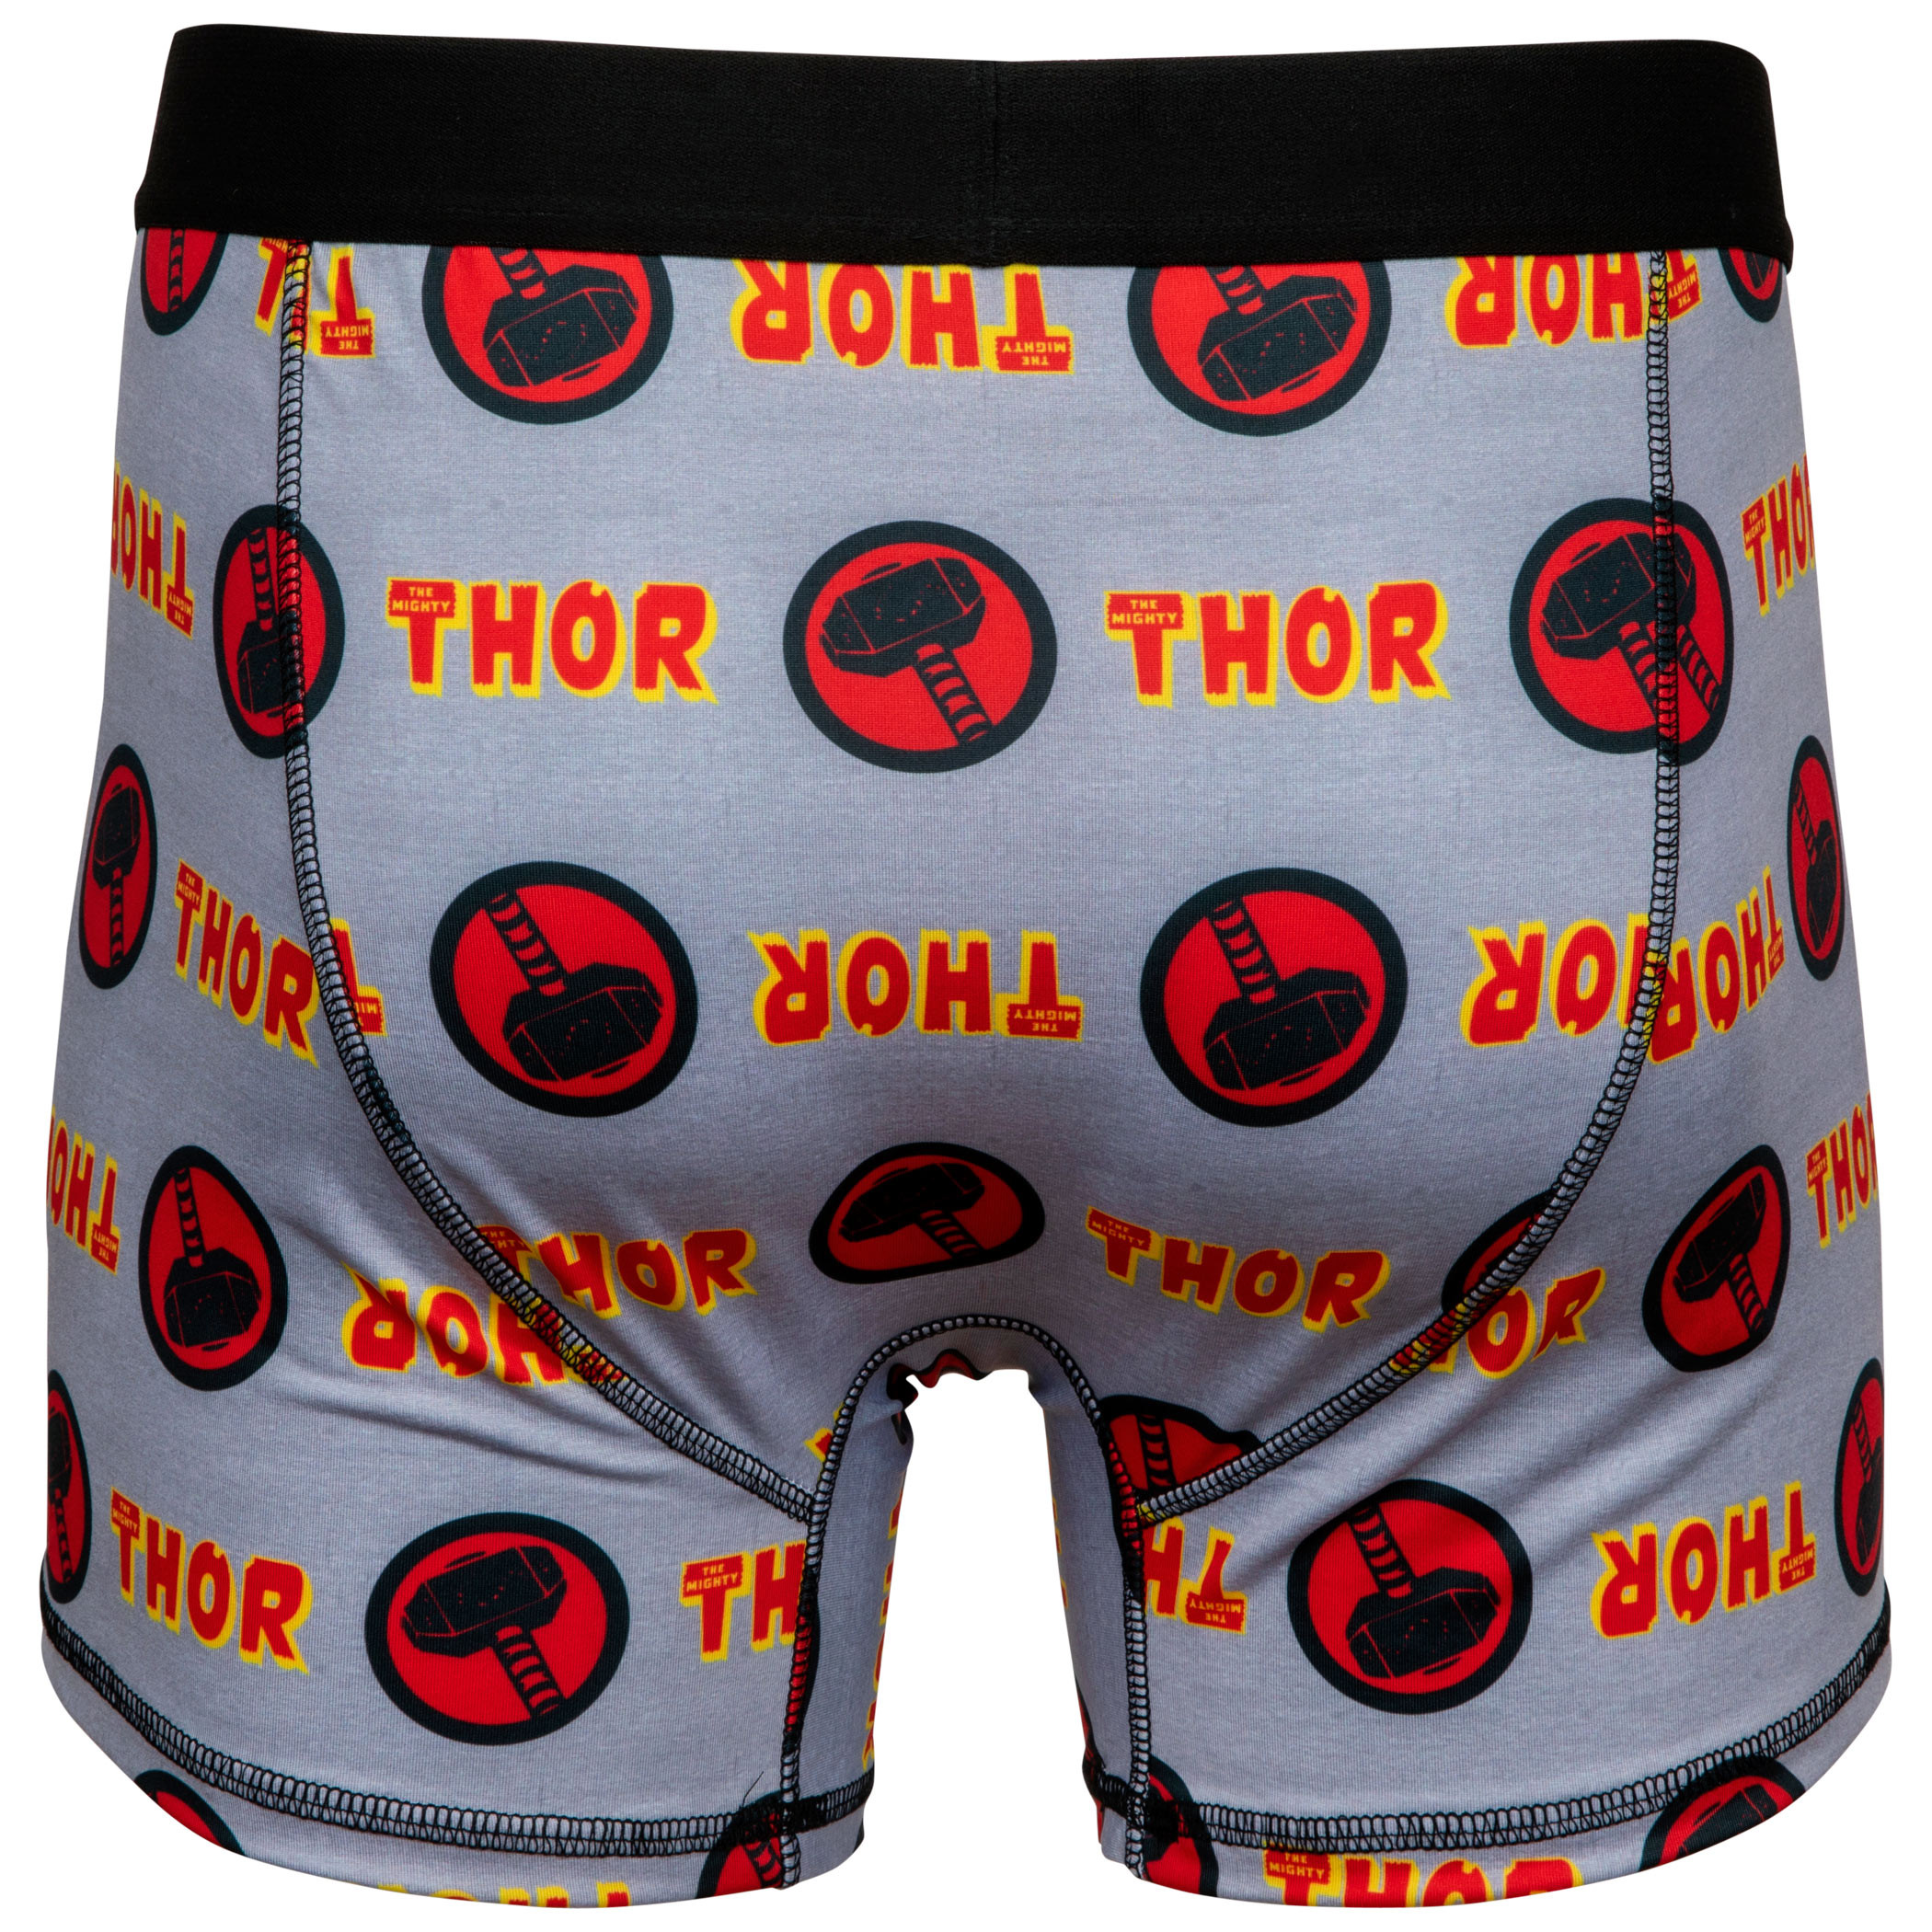 Thor Worthy Men's Underwear Boxer Briefs